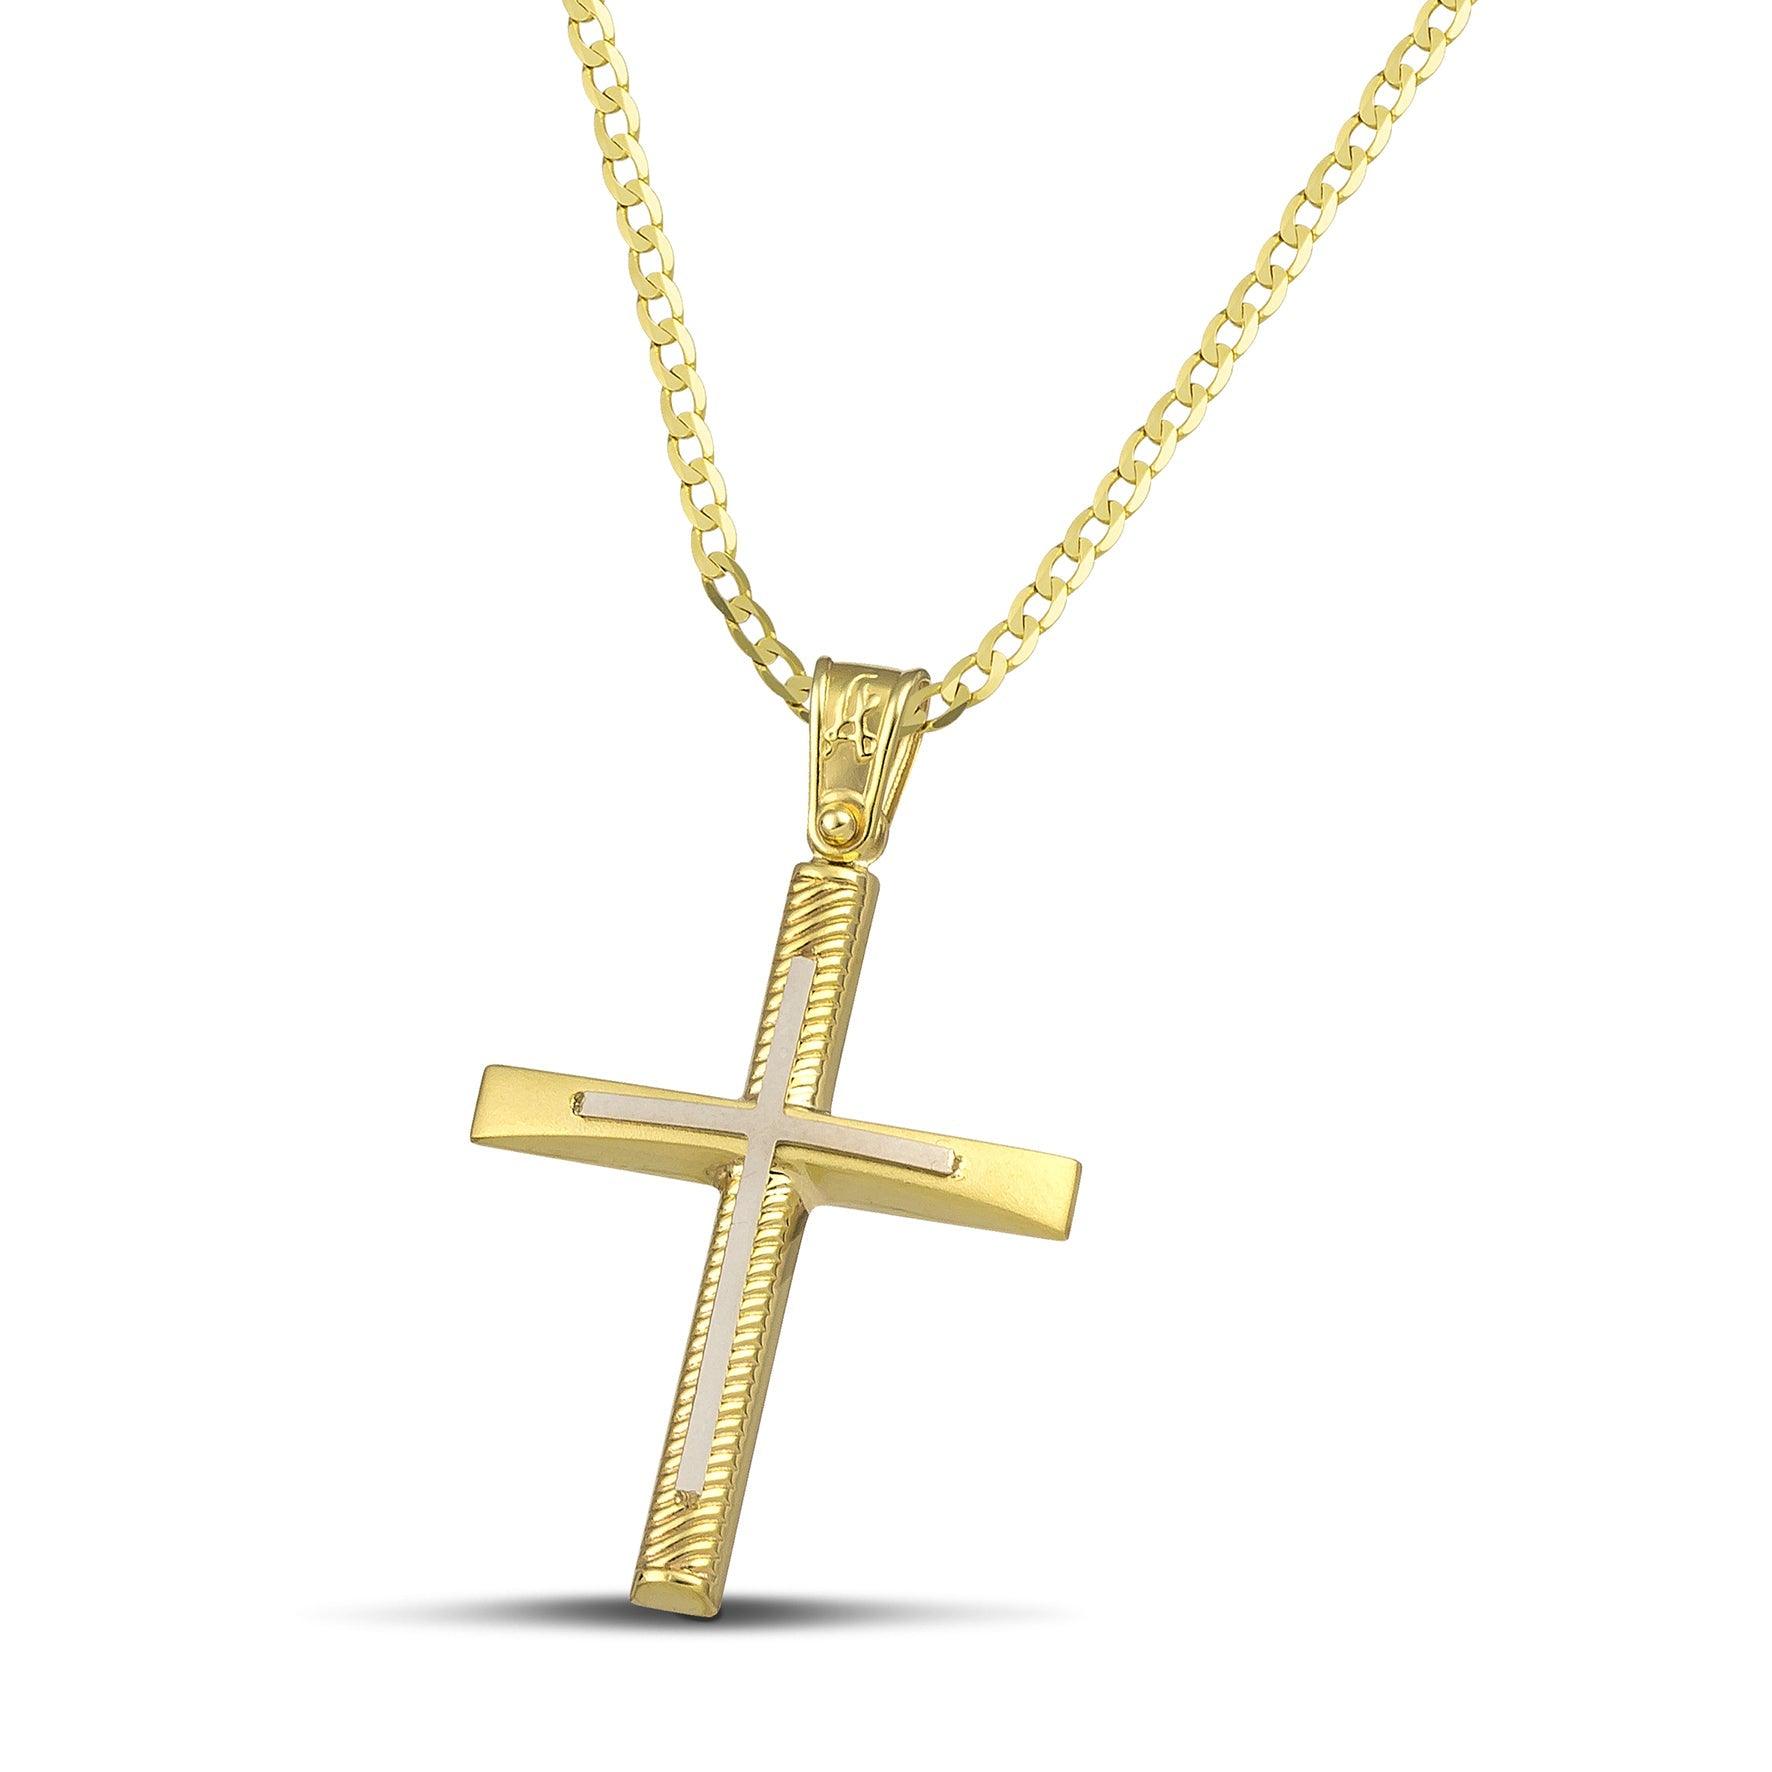 Σταυρός βάπτισης χρυσός Κ14 για γυναίκα. Διαθέτει σκαλιστά σχέδια και λευκόχρυσο σταυρό, με κλασσική  αλυσίδα.